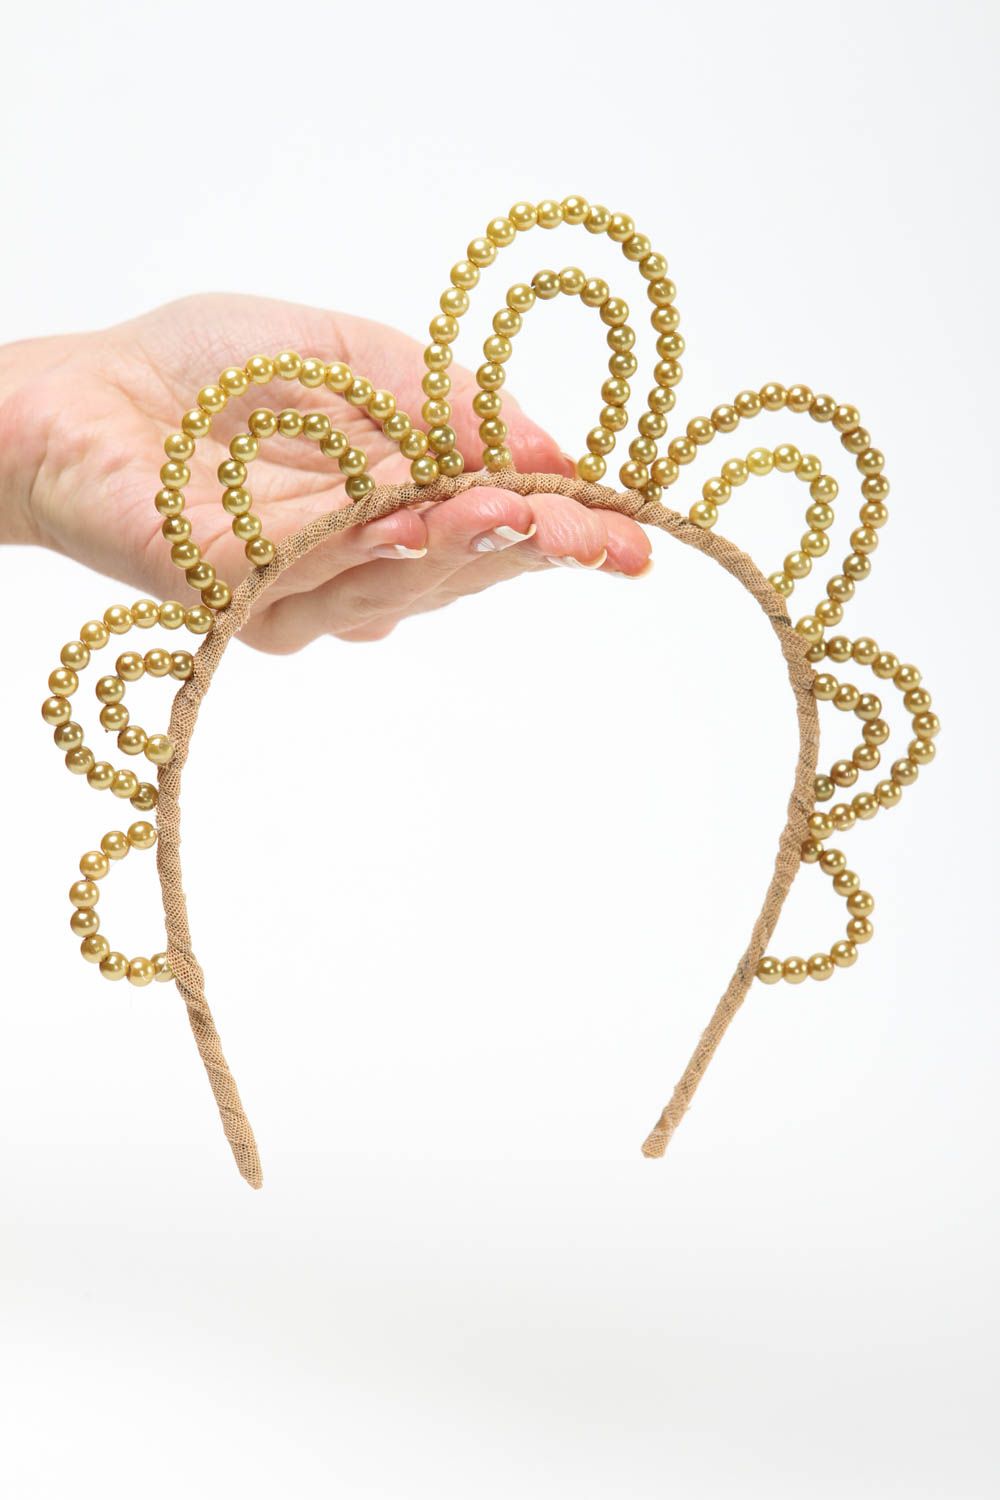 Vincha artesanal decorada accesorio para el cabello regalo original para mujer foto 5